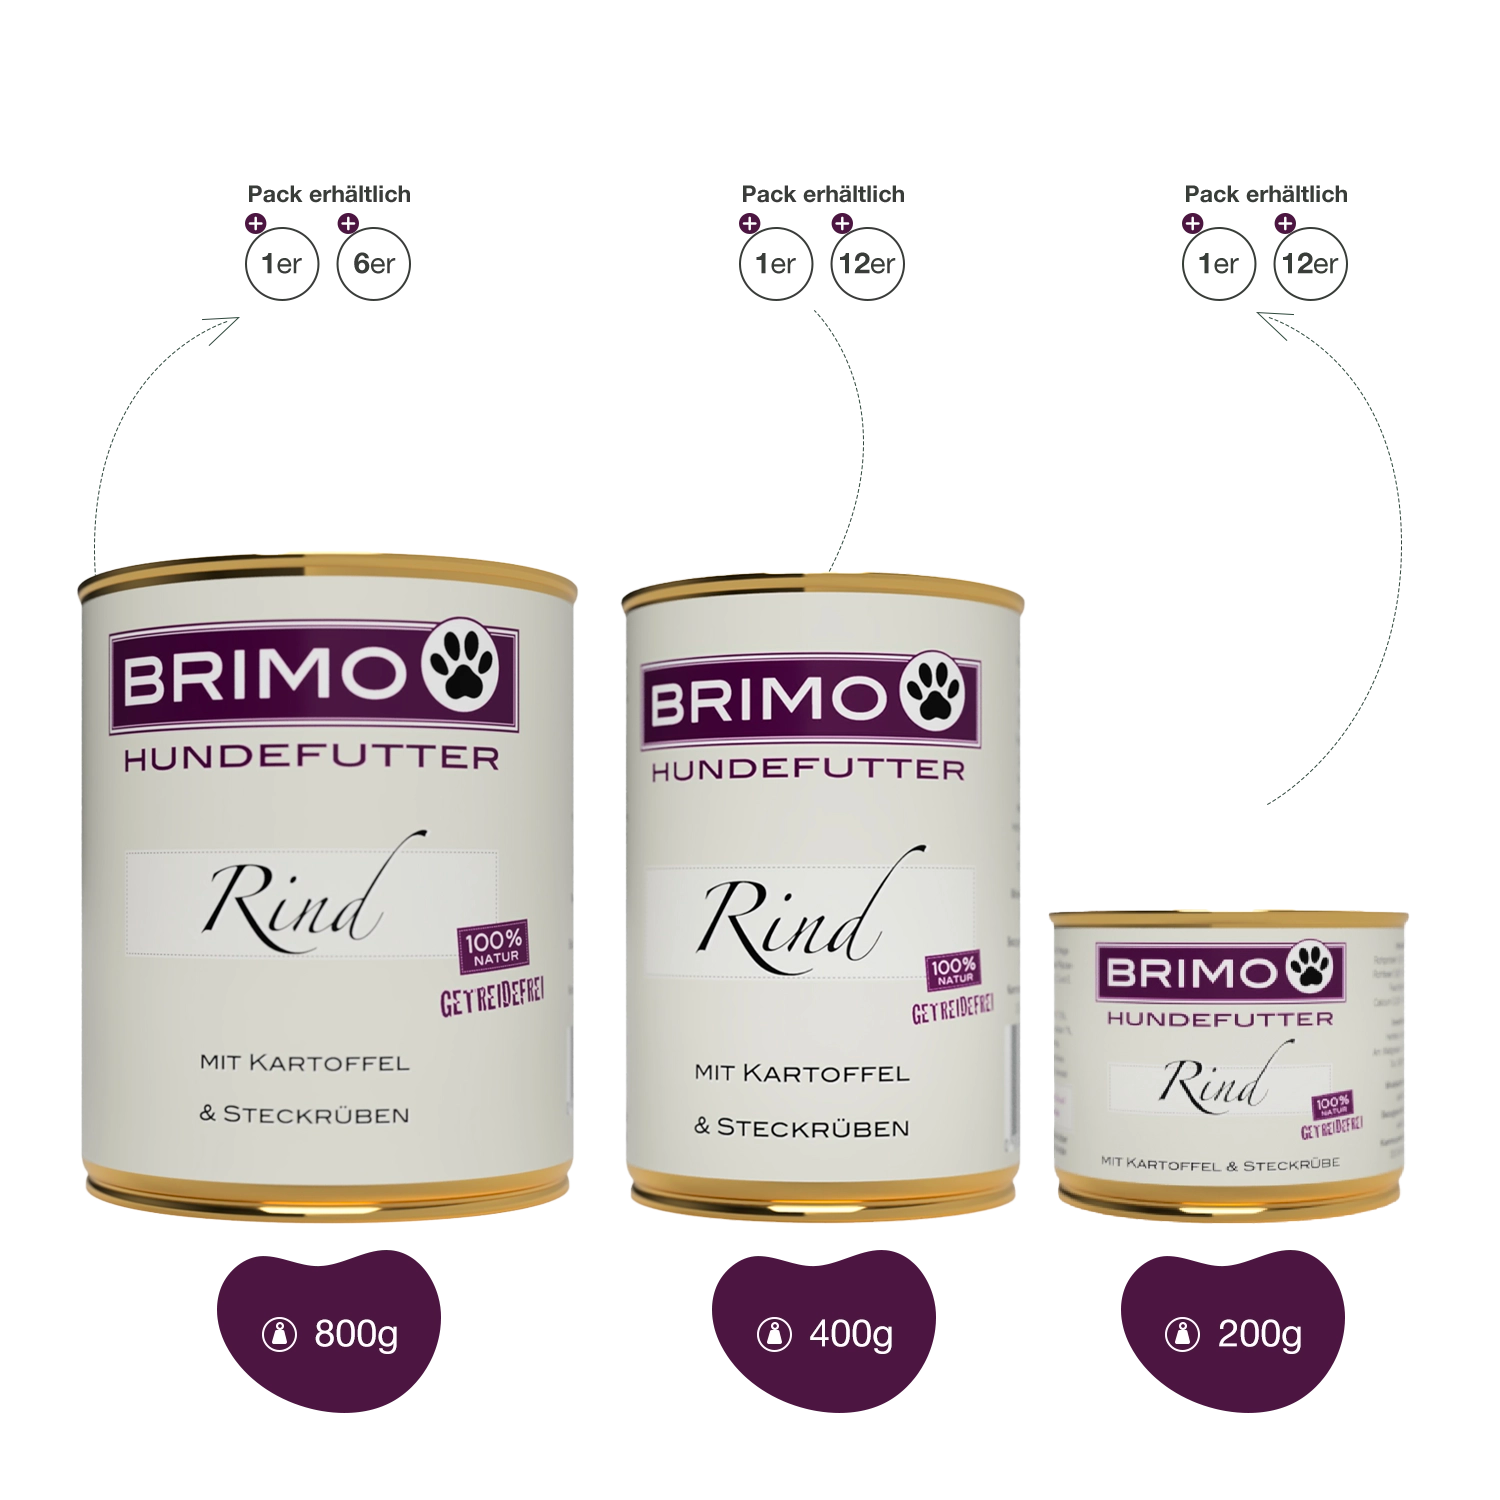 Brimo | Rind mit Kartoffel